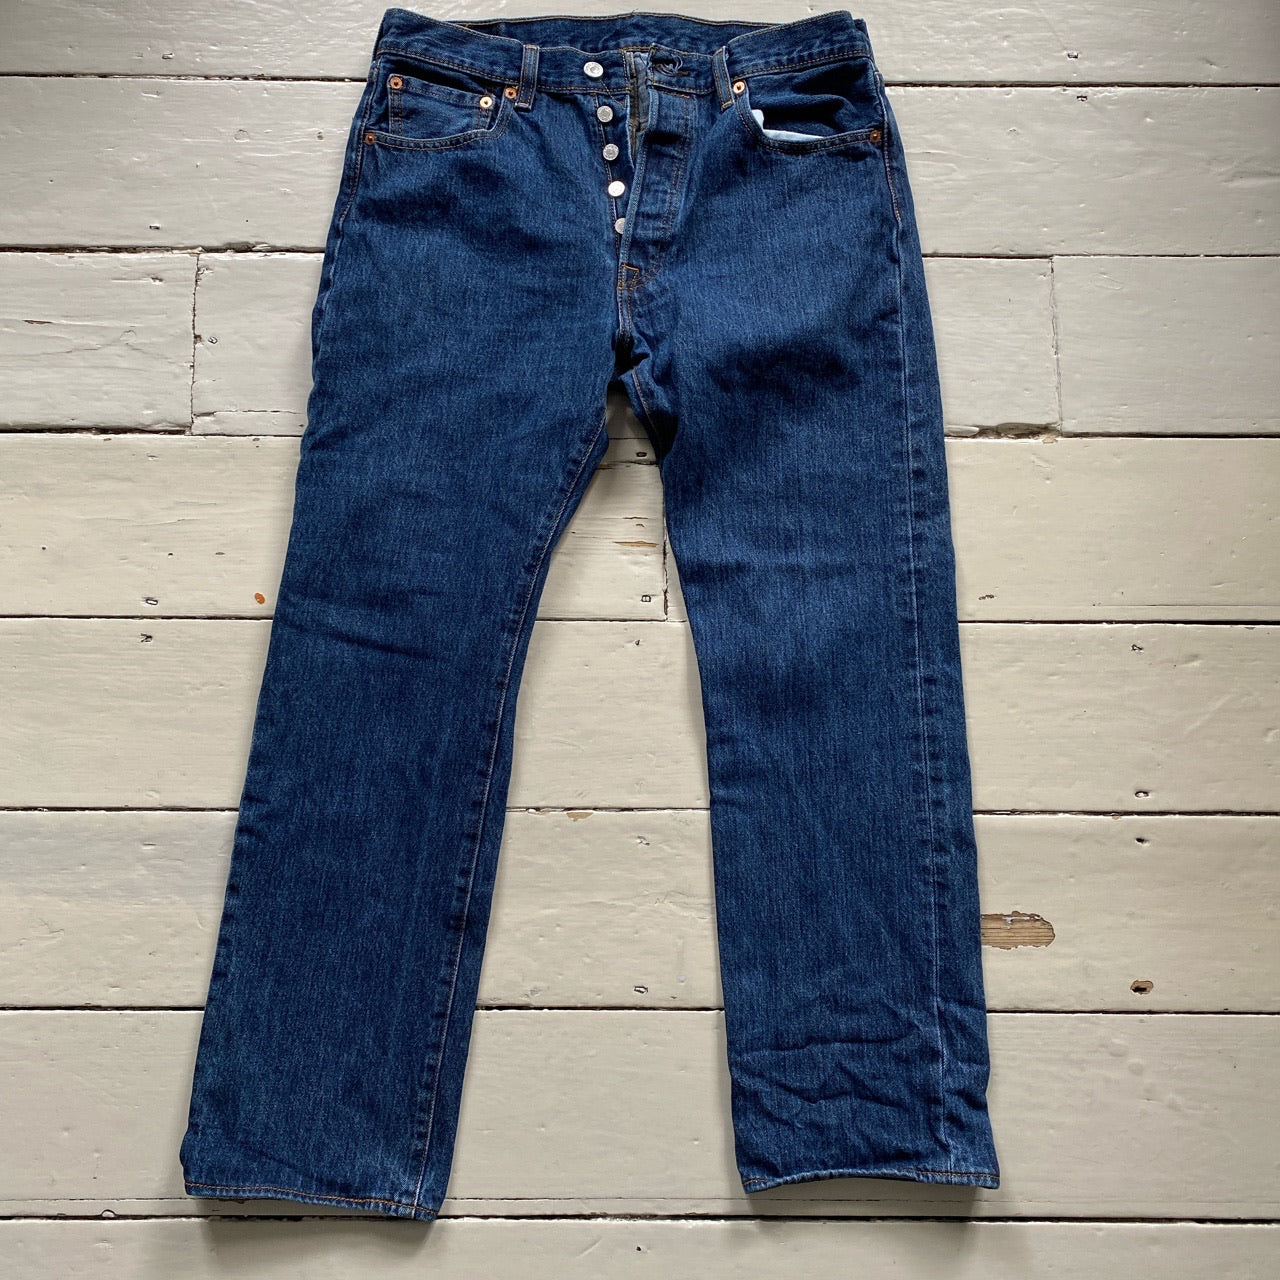 Levis 501 Blue Jeans (34/30)